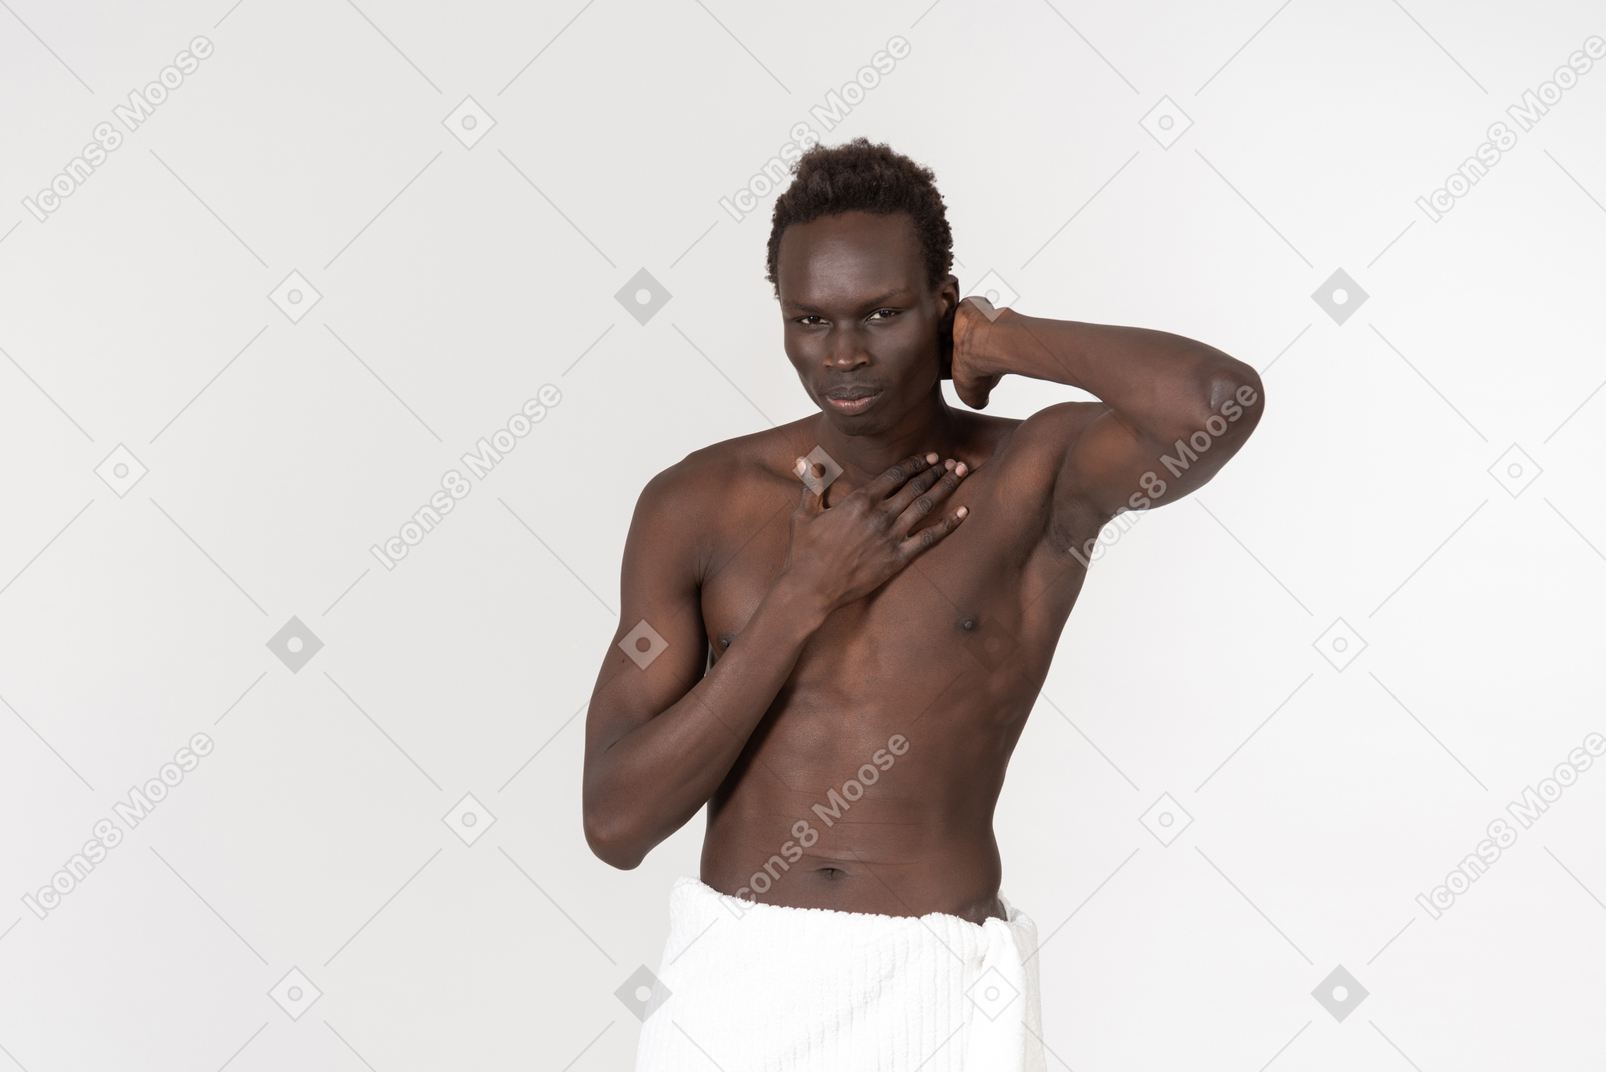 Ein junger schwarzer mann mit einem weißen badetuch um die taille macht seine morgenroutine